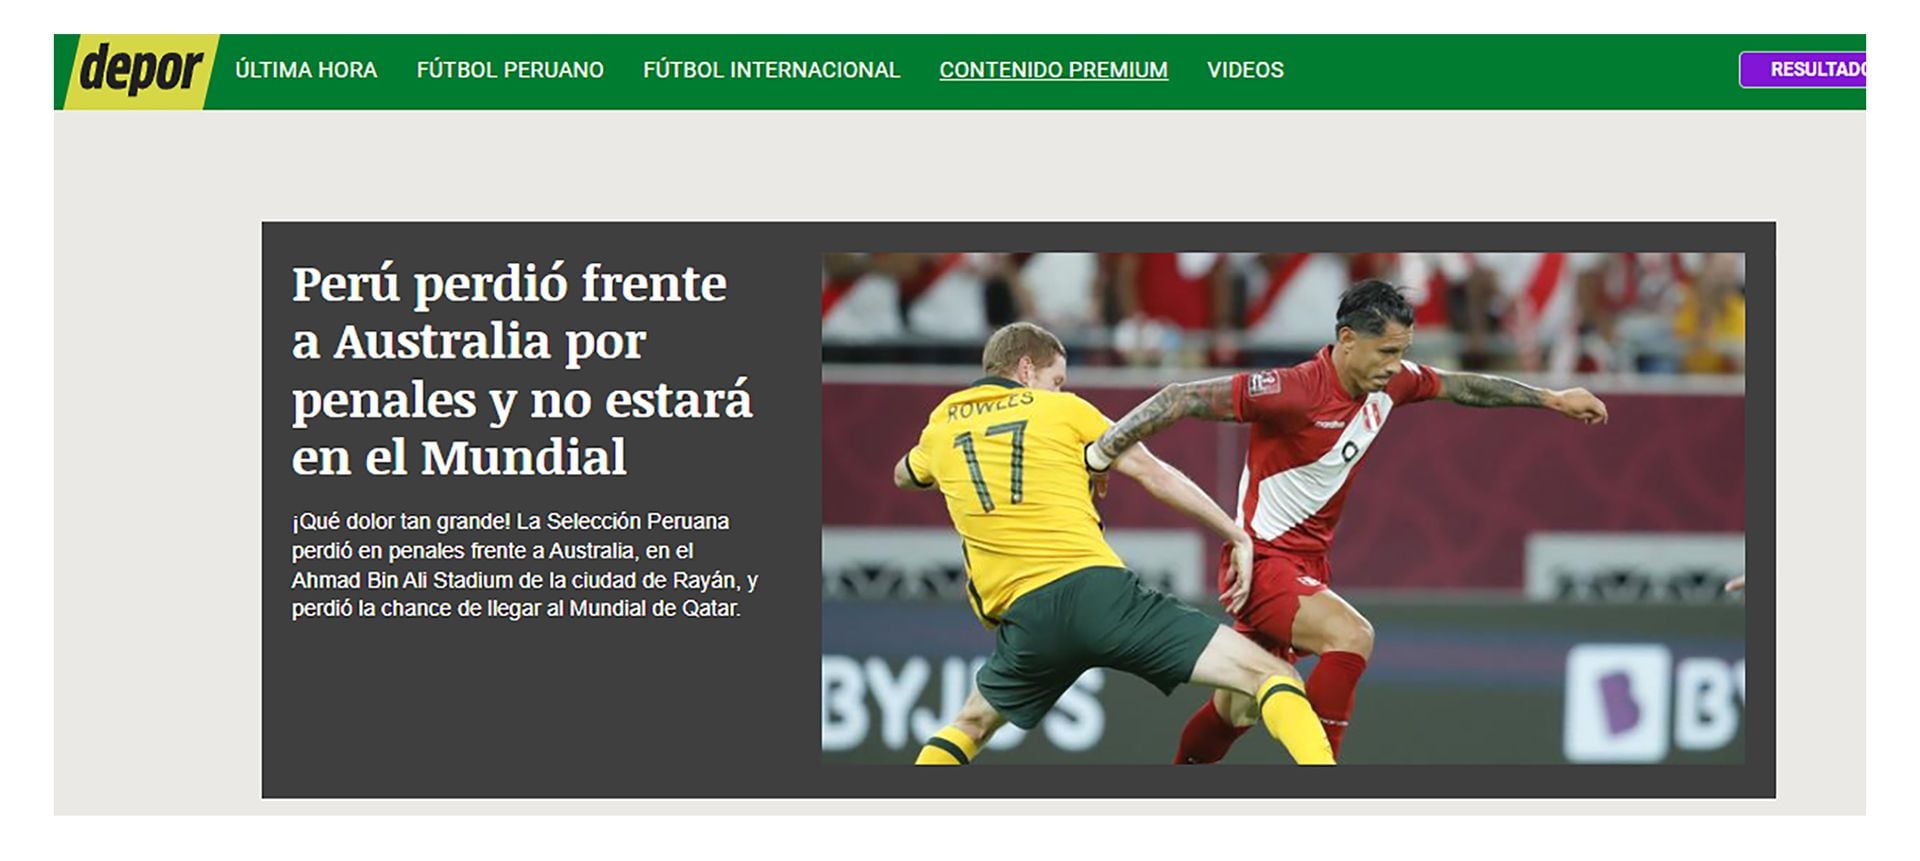 repercusiones de medios peruanos sobre la eliminación ante Australia